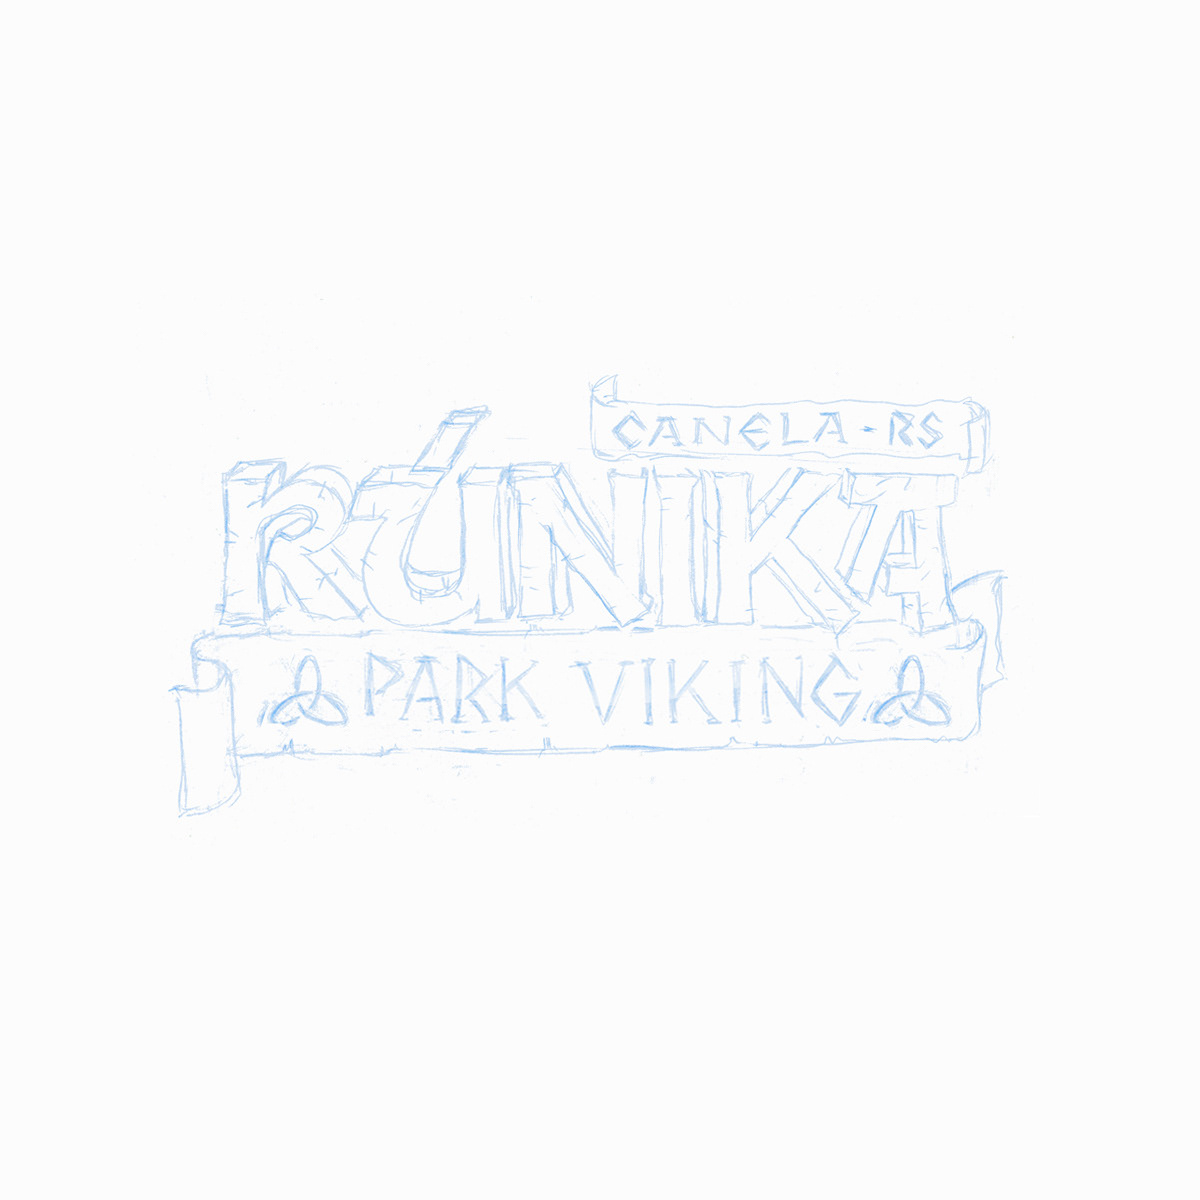 logo Logotipo logmarca Mascote corporativo Ilustração desenho viking